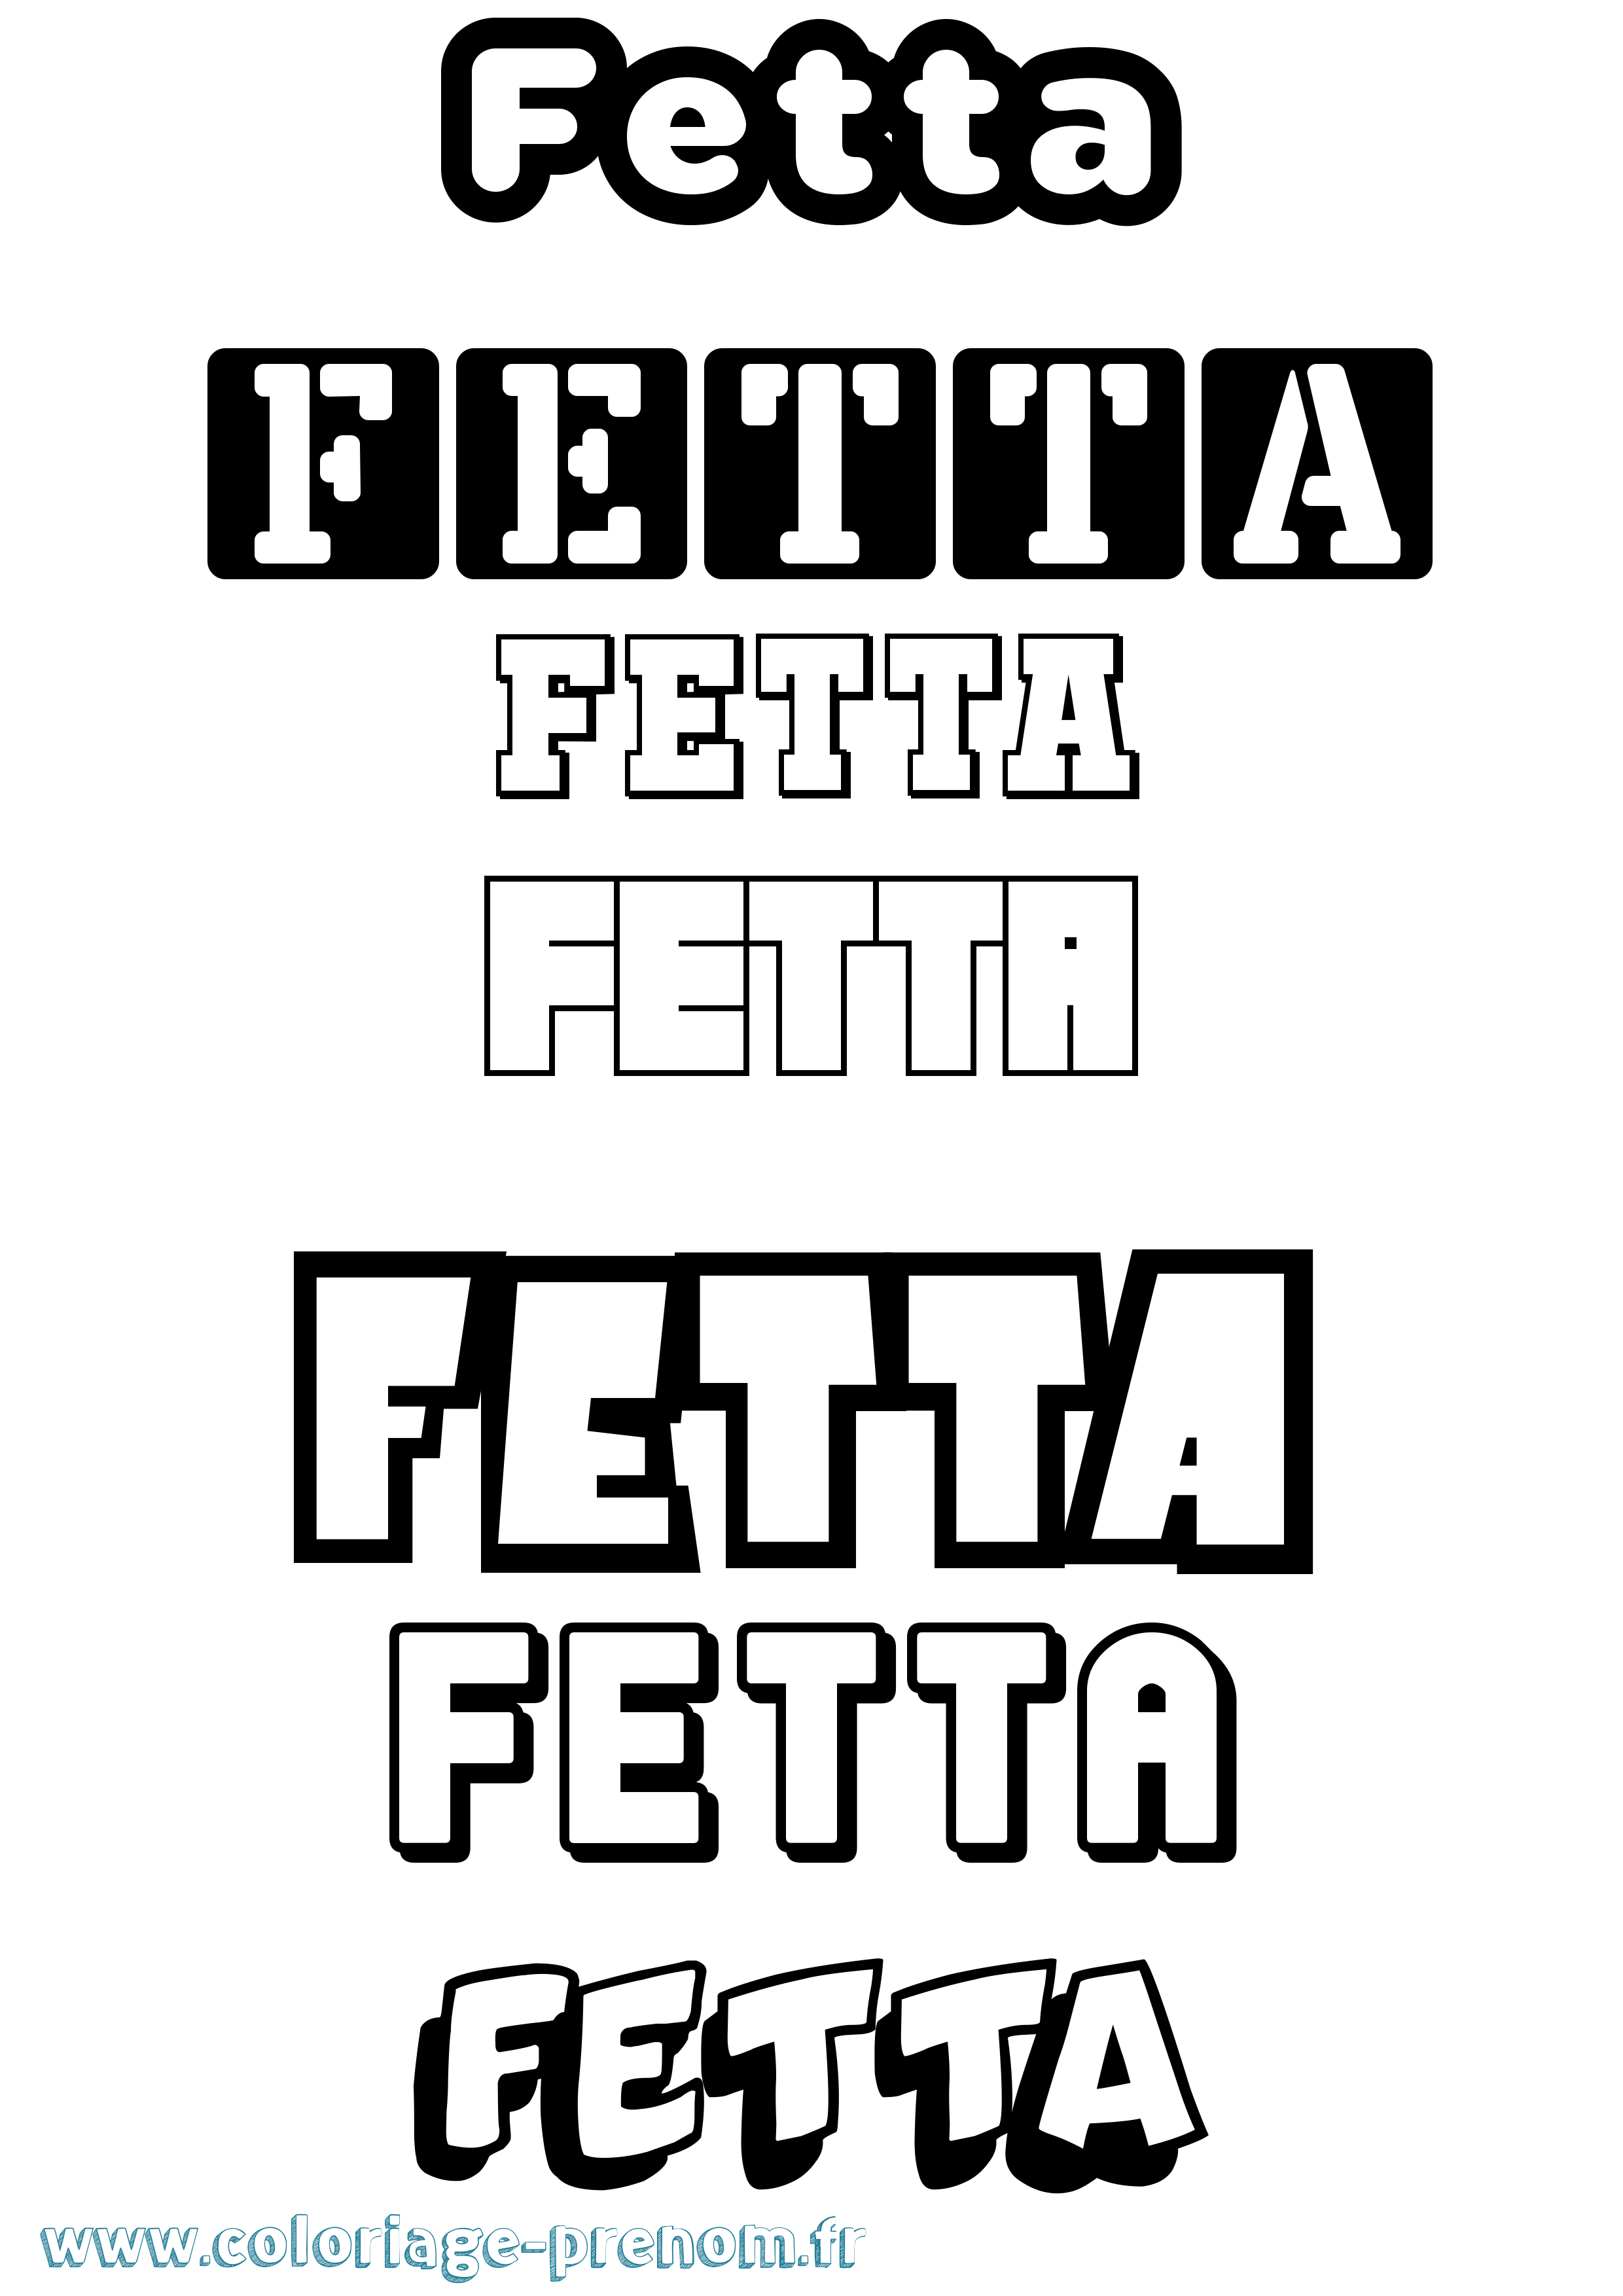 Coloriage prénom Fetta Simple